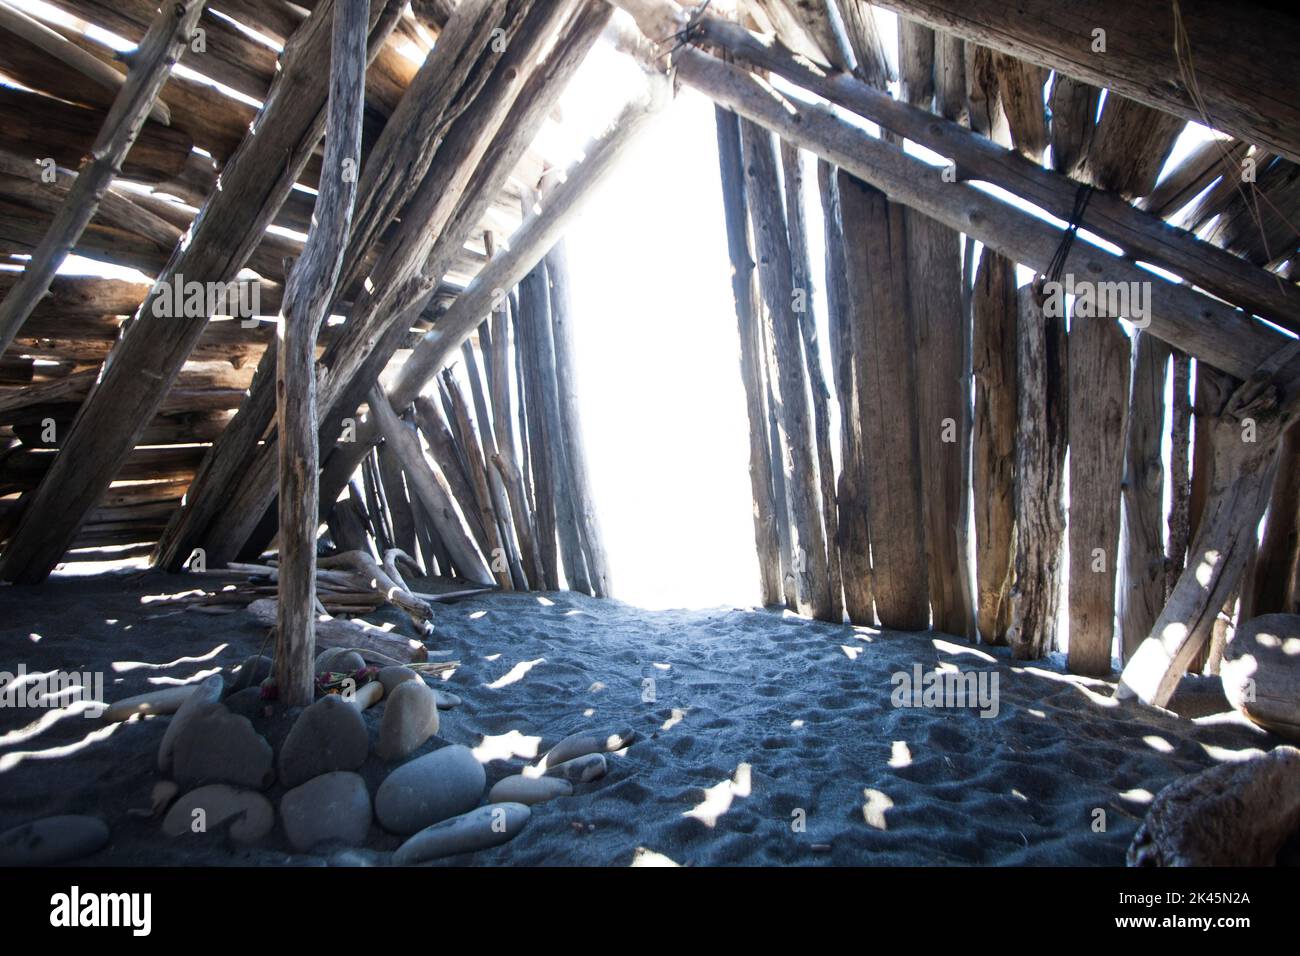 Driftwood hut interior on sand. Stock Photo